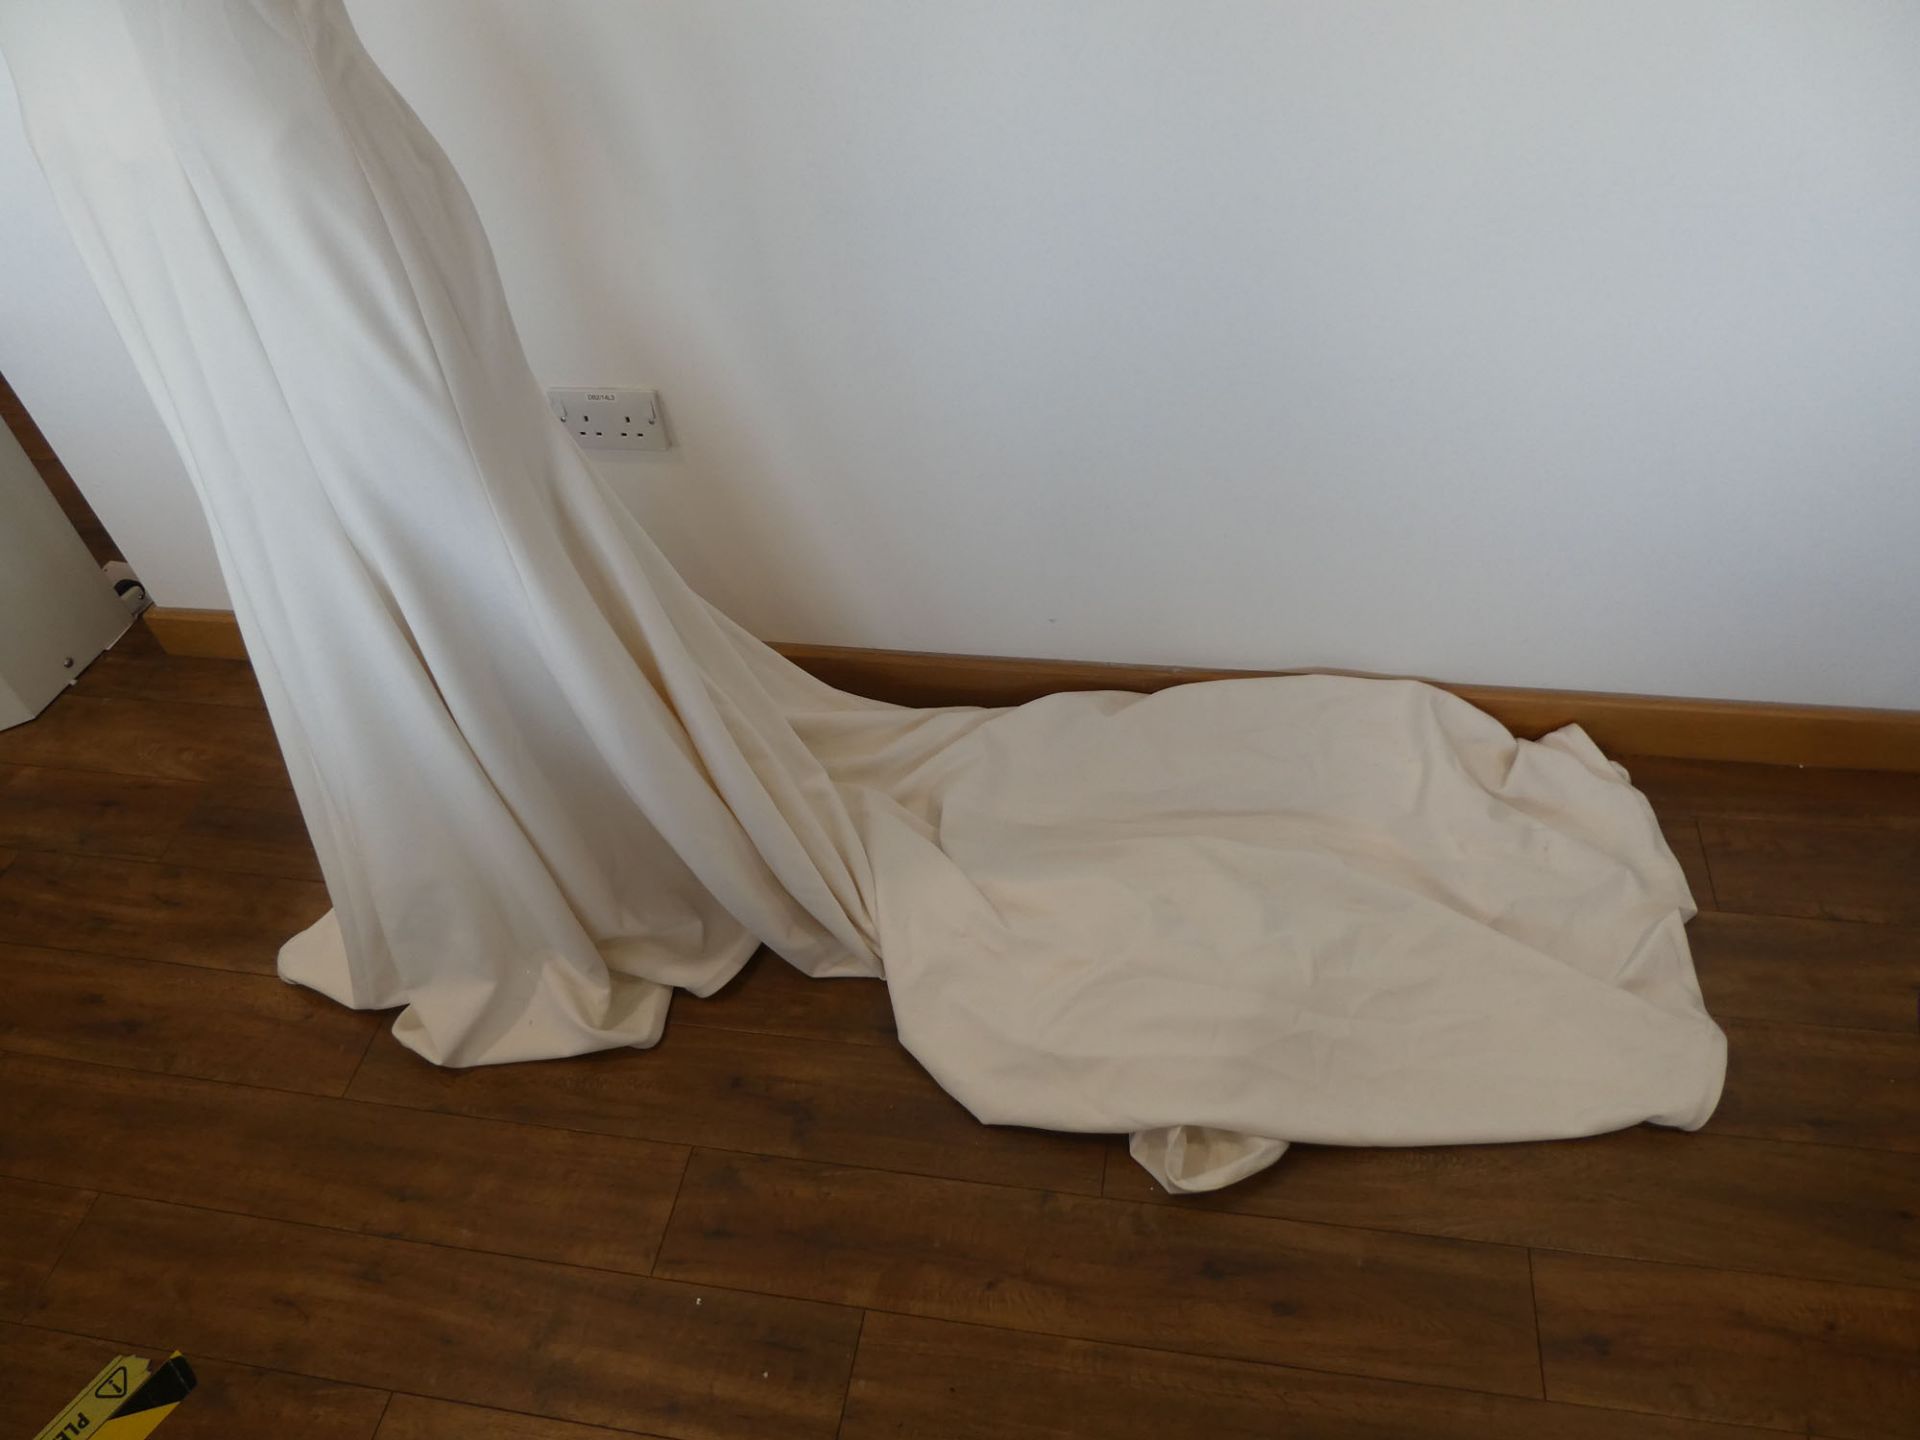 Milla Nova ivory wedding dress, size 40 - Image 2 of 2